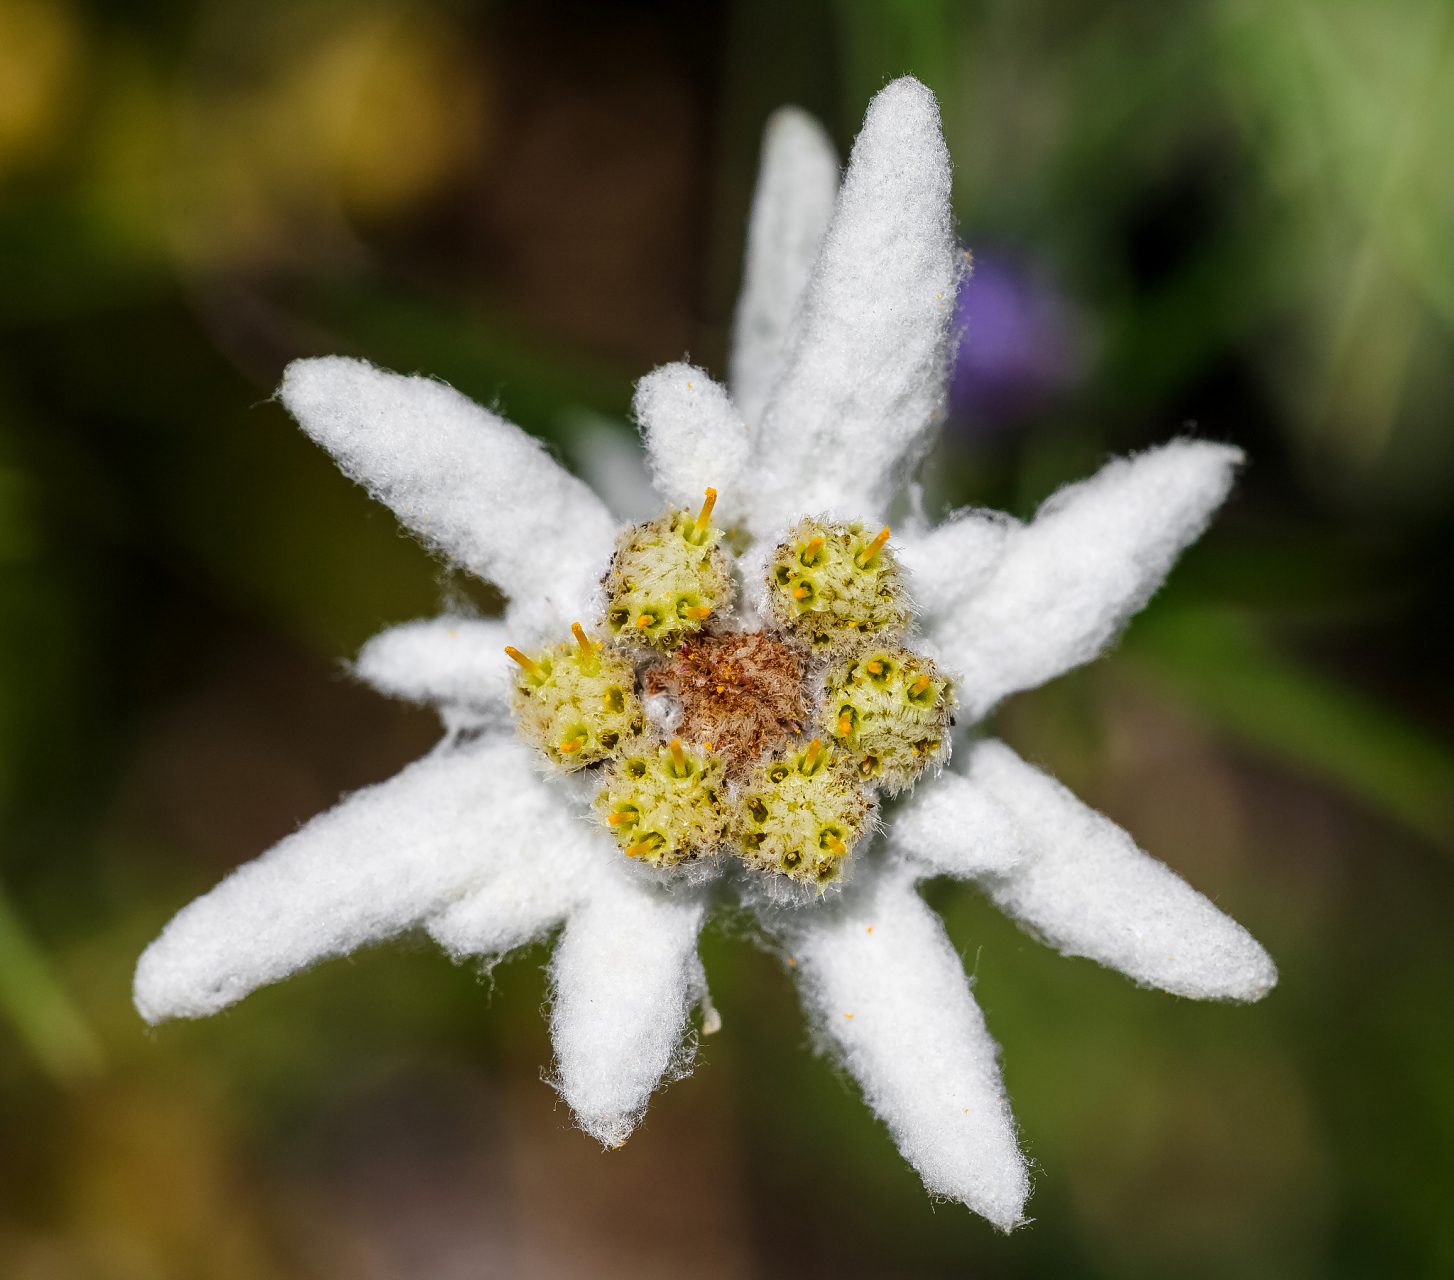 【雪绒花】,别名火绒草,薄雪草,属菊科火绒草属的多年生草本高山植物